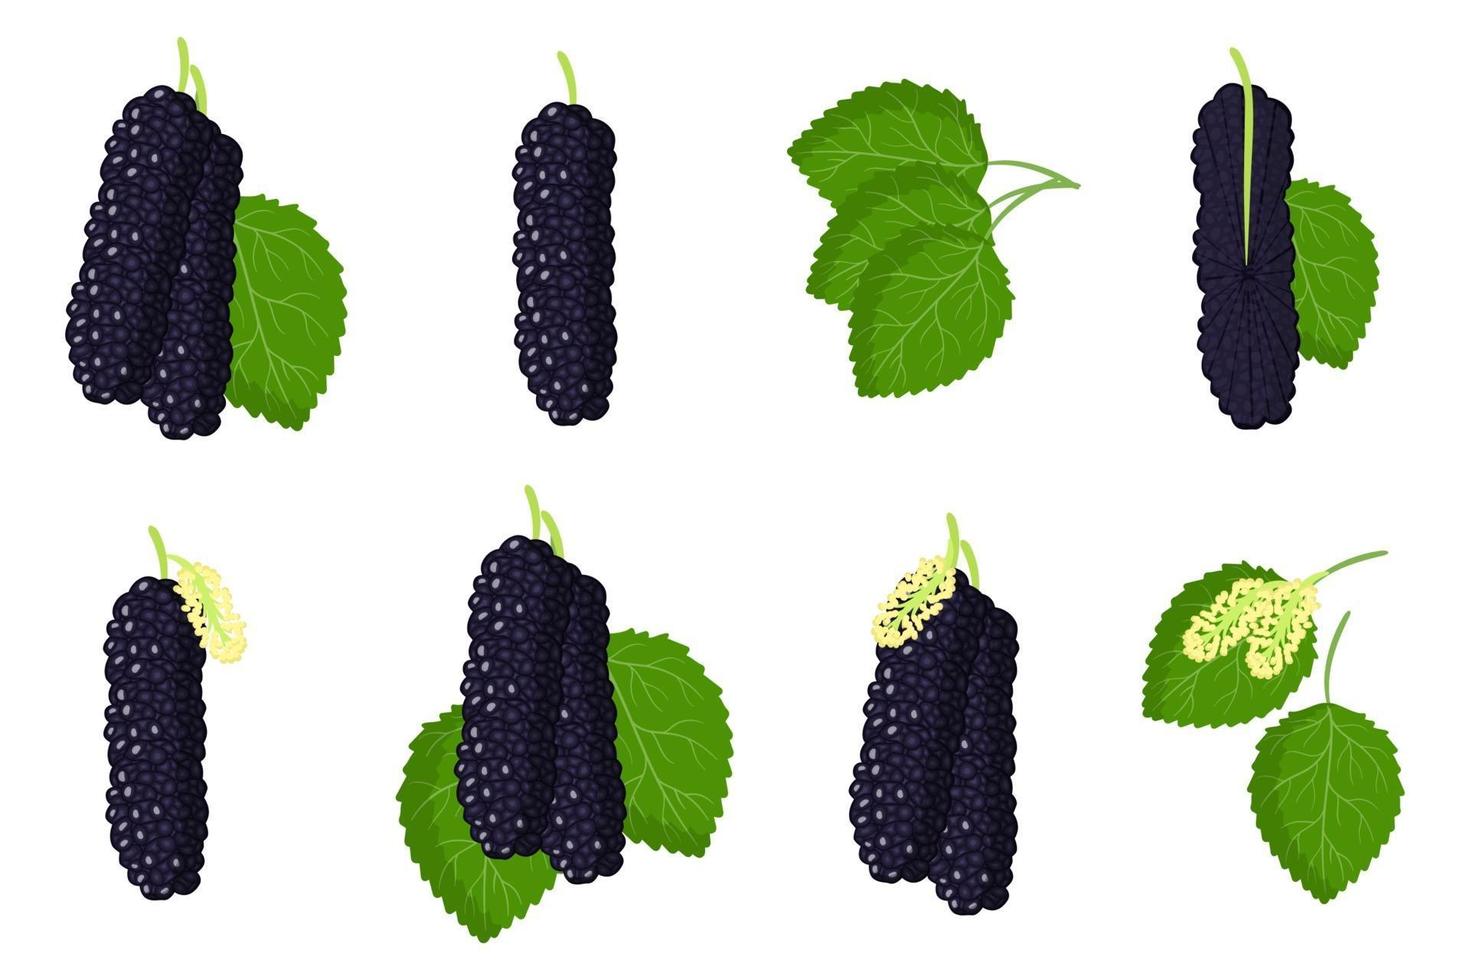 Satz Illustrationen mit Maulbeer-Hubrid-exotischen Früchten, Blumen und Blättern lokalisiert auf einem weißen Hintergrund. vektor